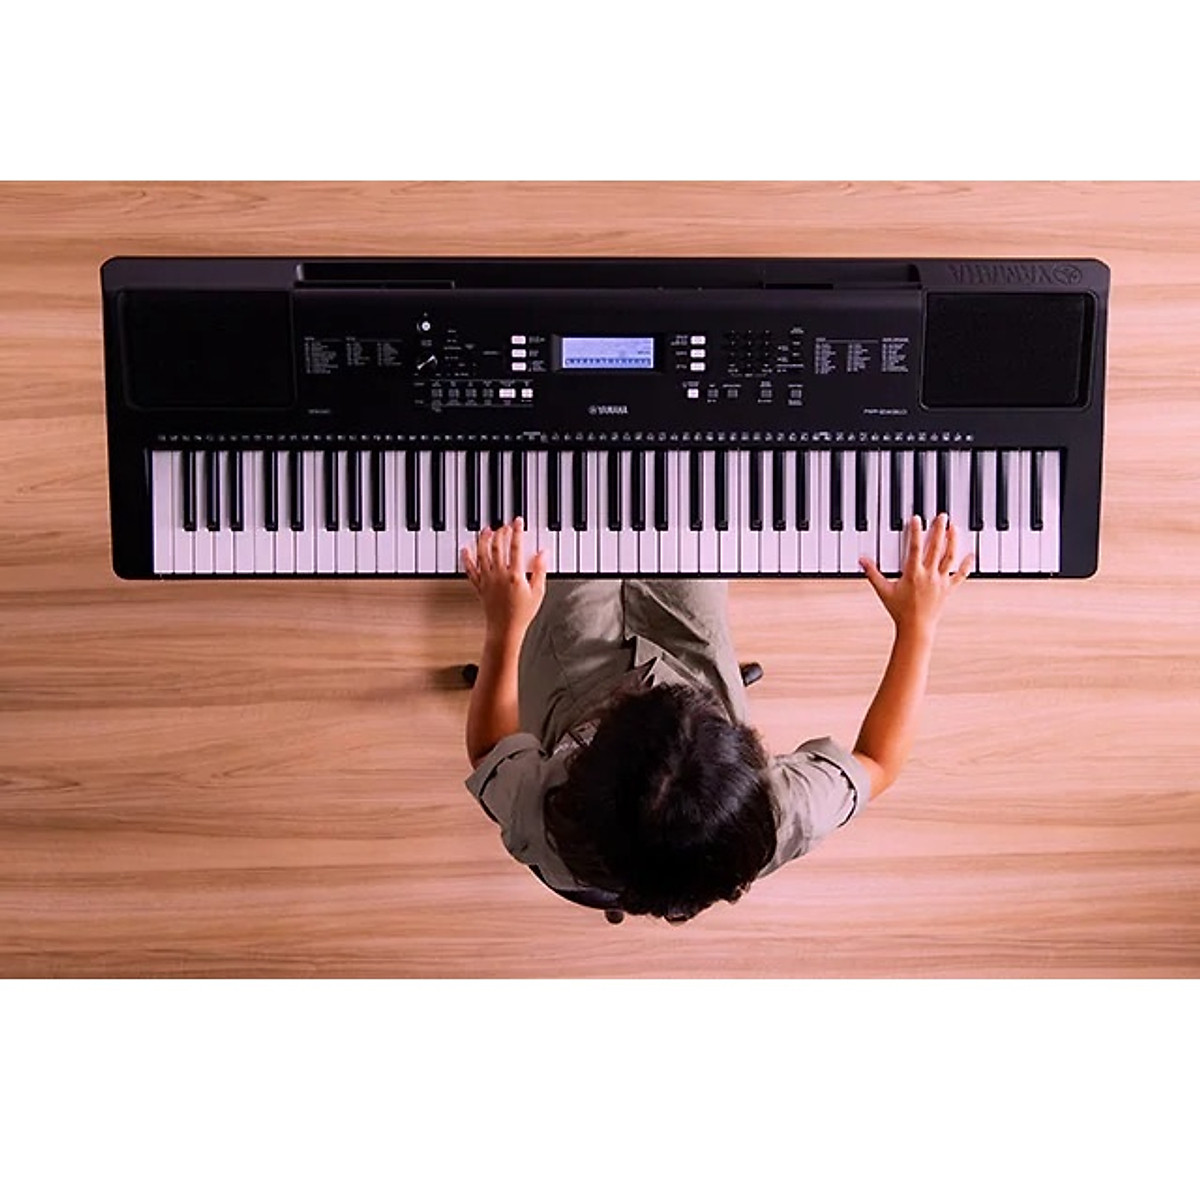 Đàn Organ điện tử/ Portable Keyboard - Yamaha PSR-EW310 (PSR EW310) - Màu đen - Hàng chính hãng:5244